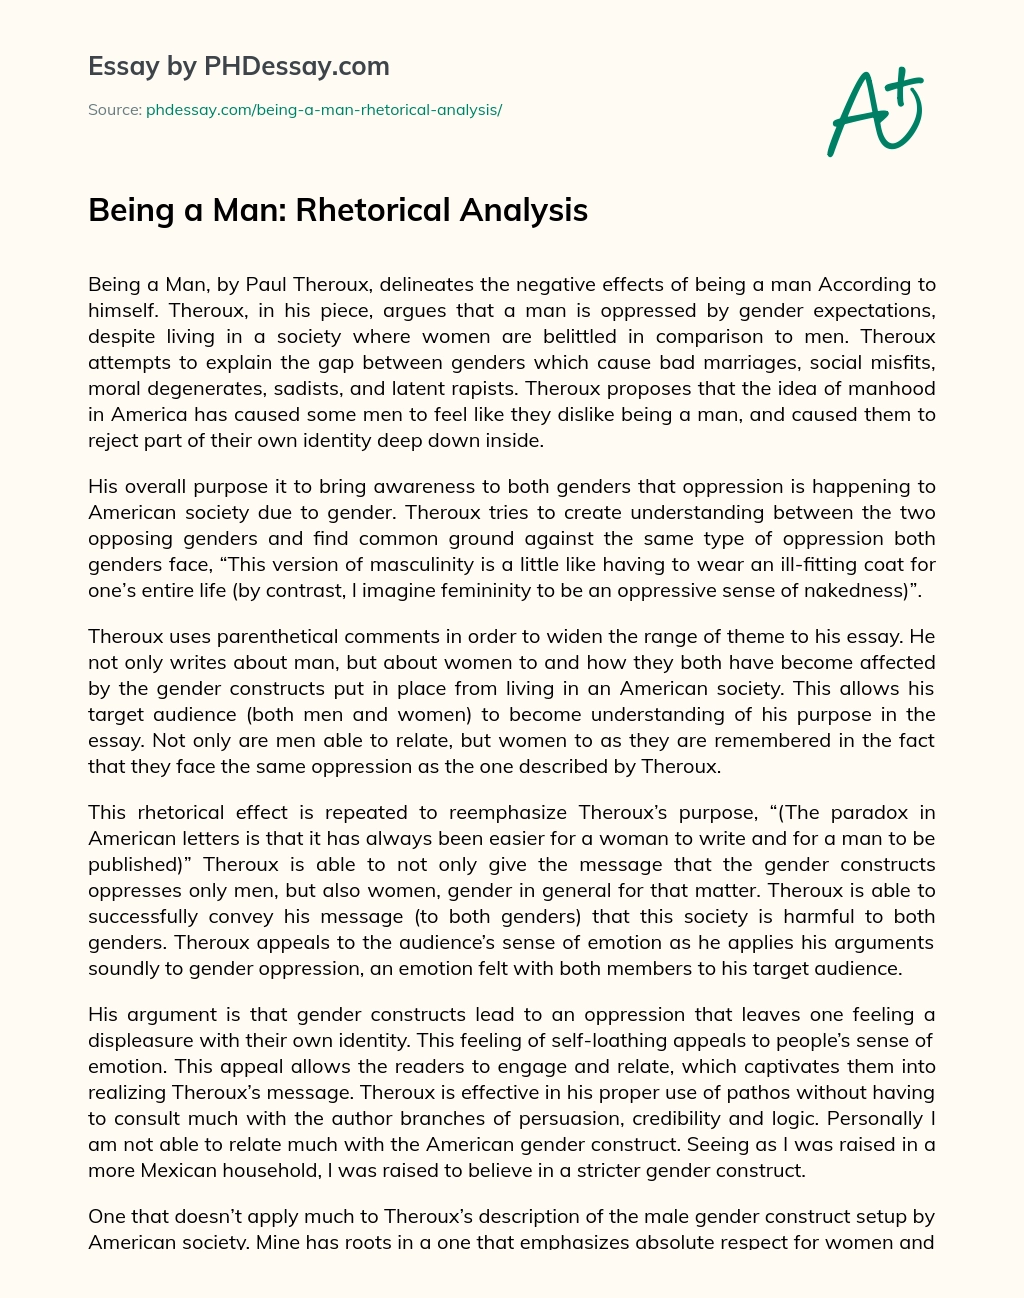 Being a Man: Rhetorical Analysis essay